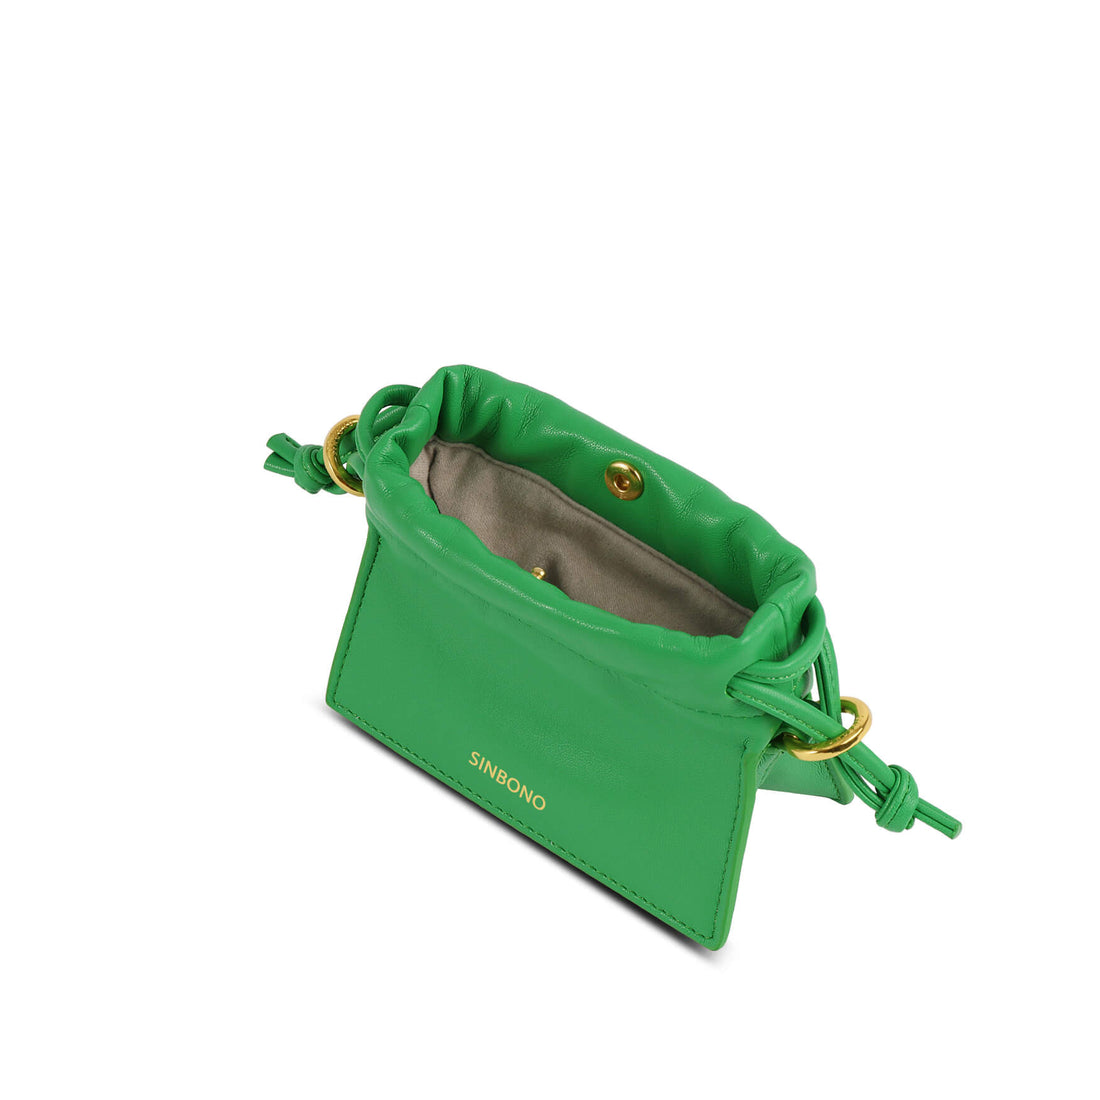 SINBONO Mini Drawstring Vegan Handbags Grass Green